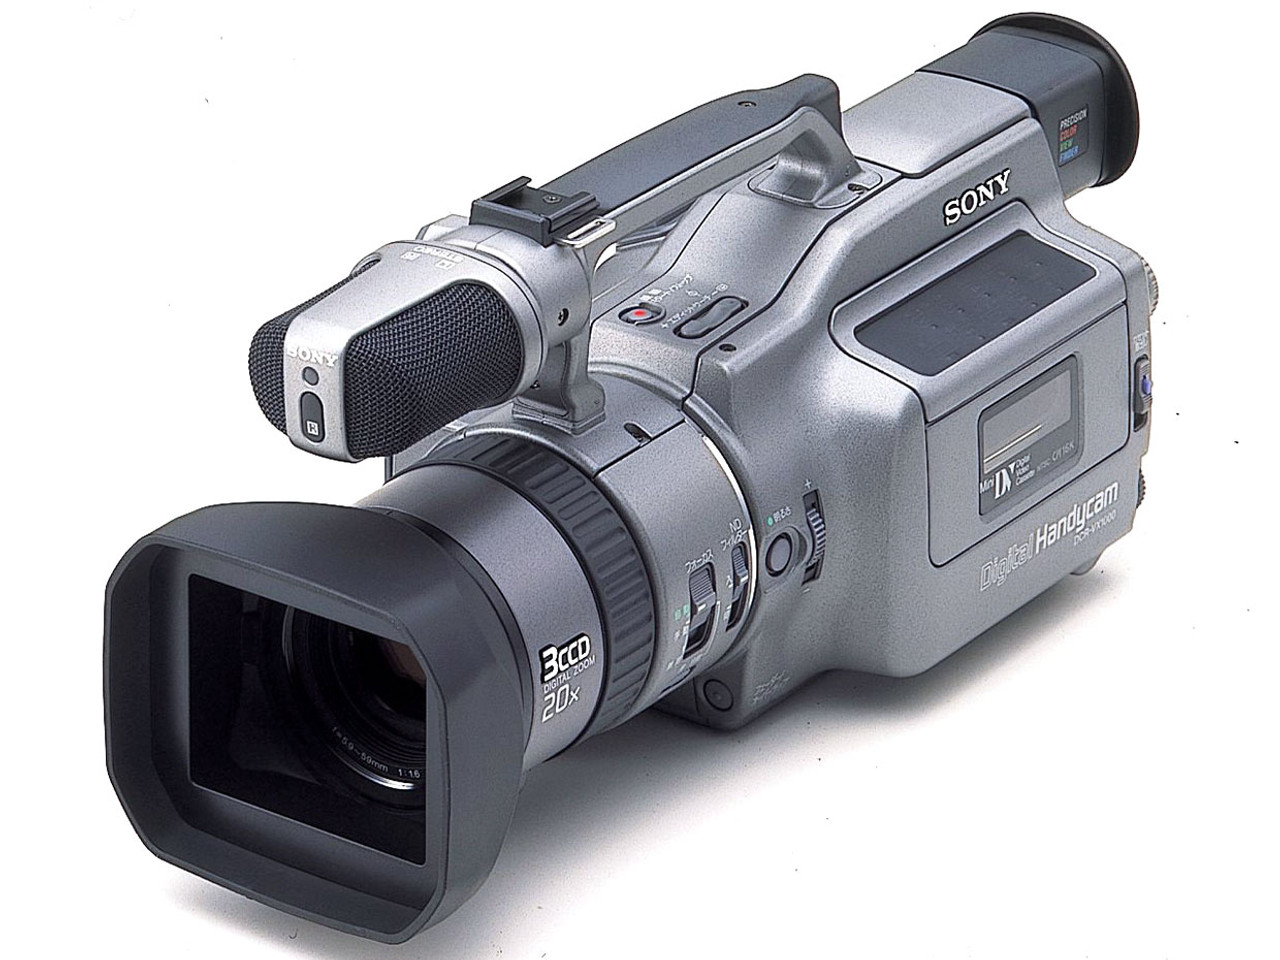 69800円希望ですSONY DCR-VX1000 ビデオカメラ 3CCD miniDV - ビデオカメラ